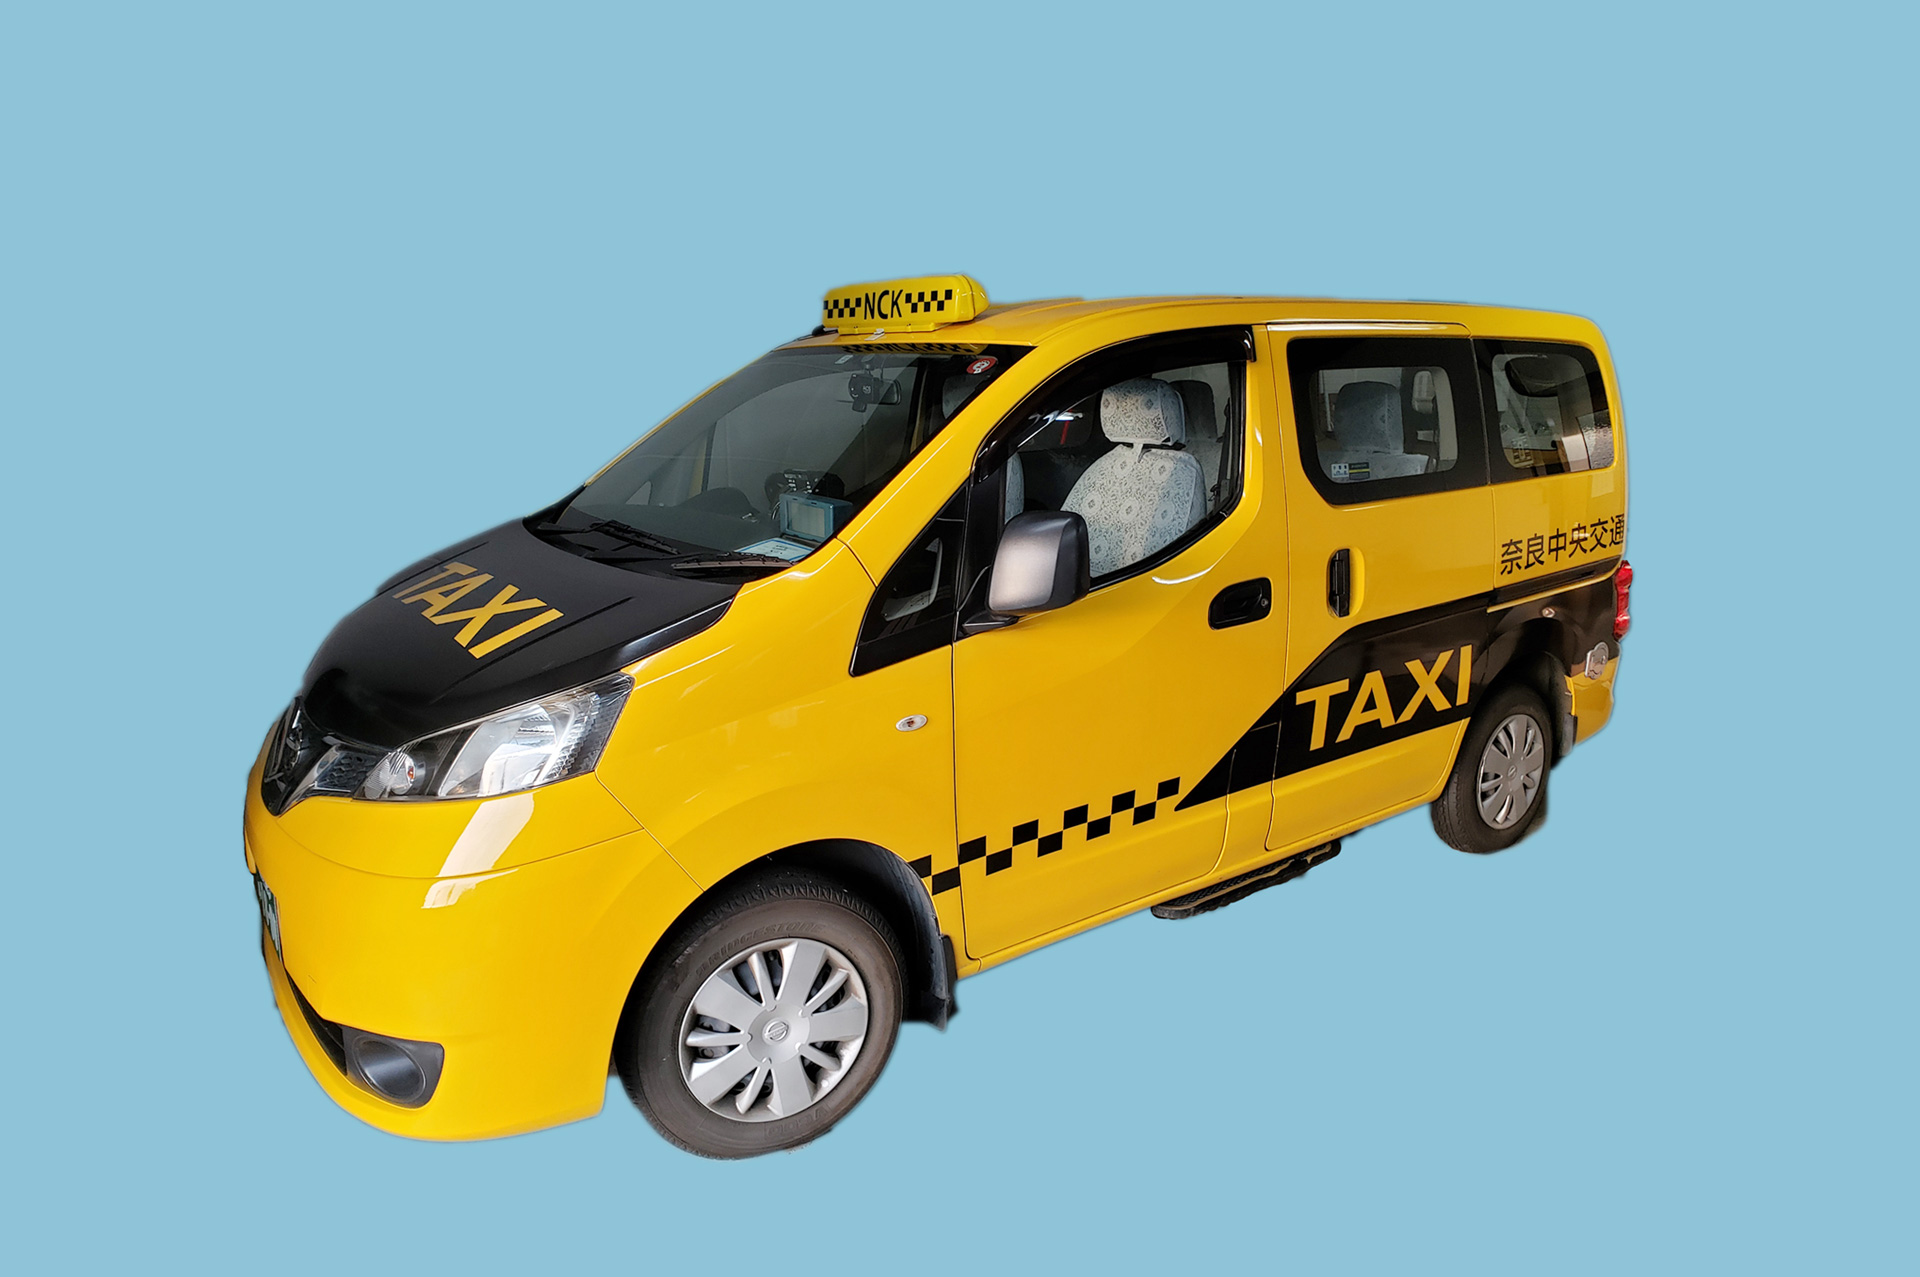 奈良県奈良市、生駒市のタクシー、タクシー送迎なら株式会社奈良中央交通へお任せください。